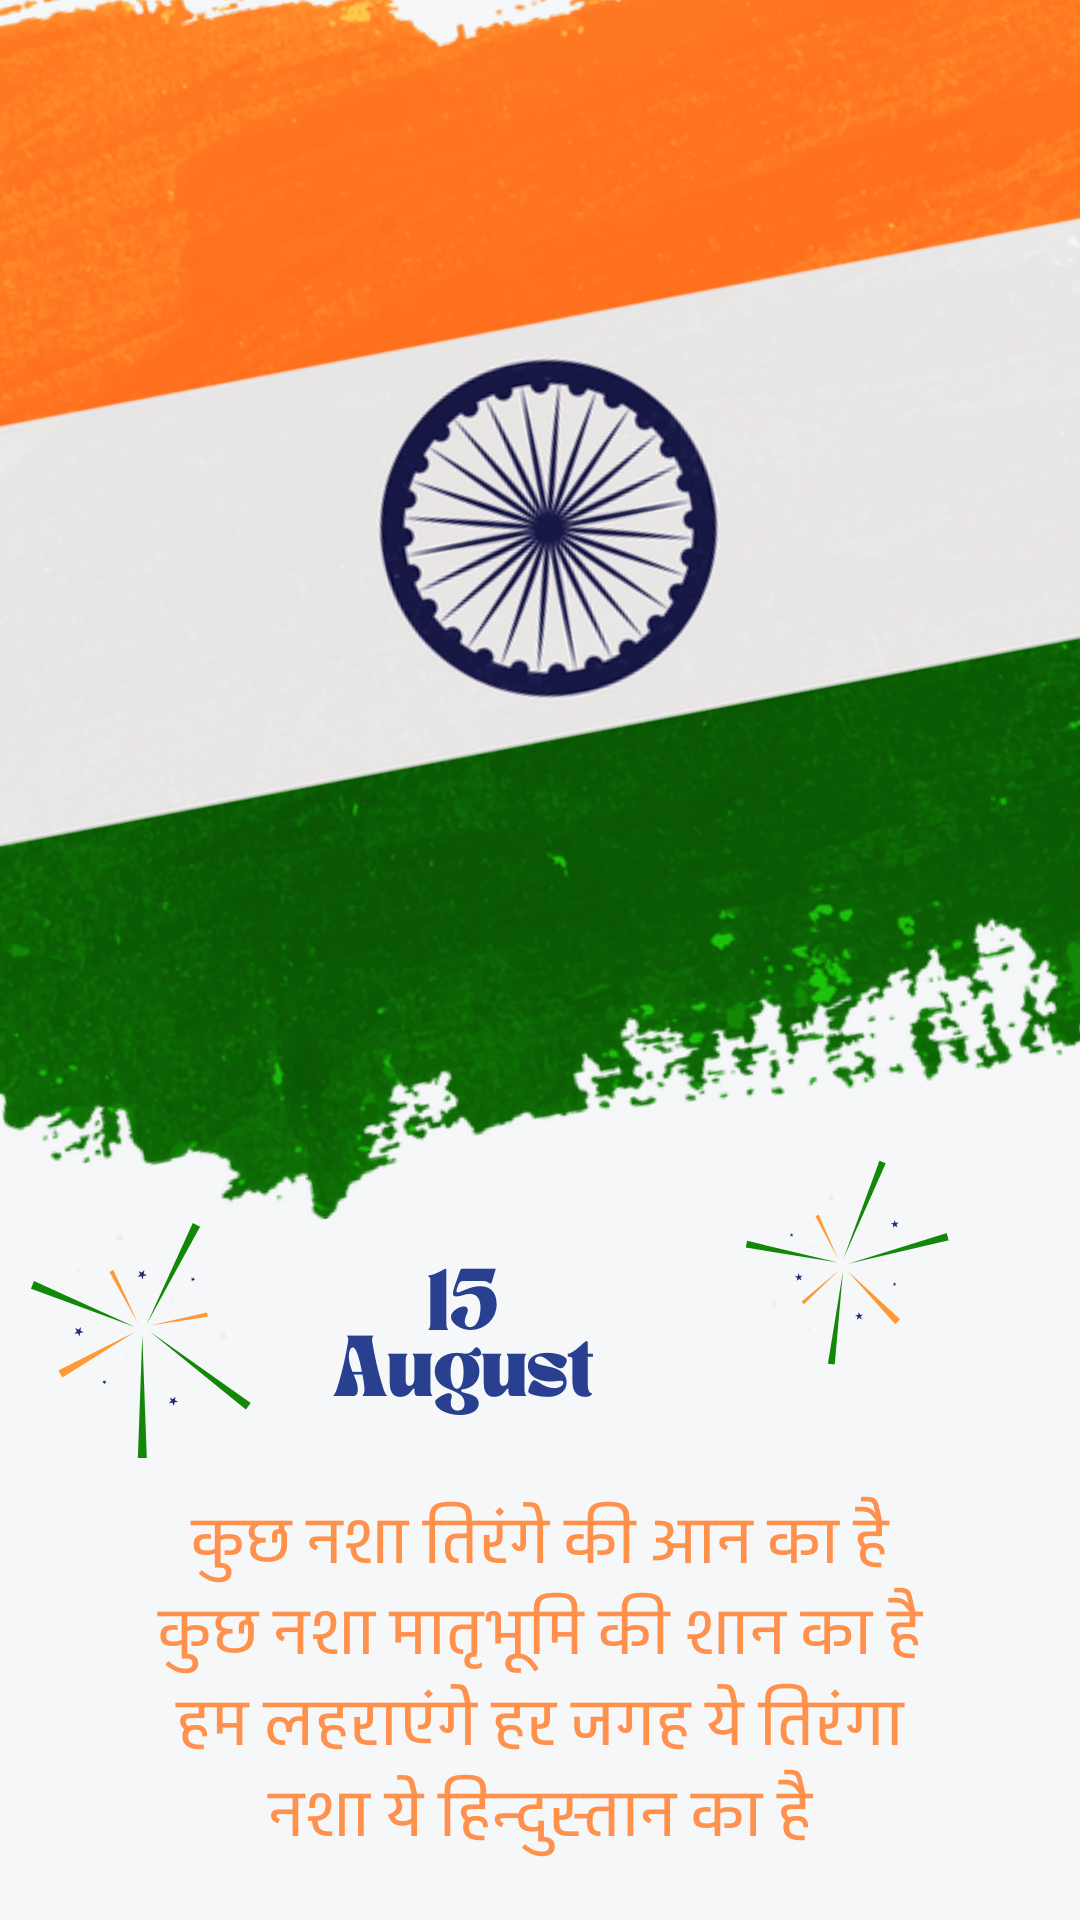 भारतीय स्वतंत्रता दिवस 2022 पर तिरंगे झंडे पर शायरी